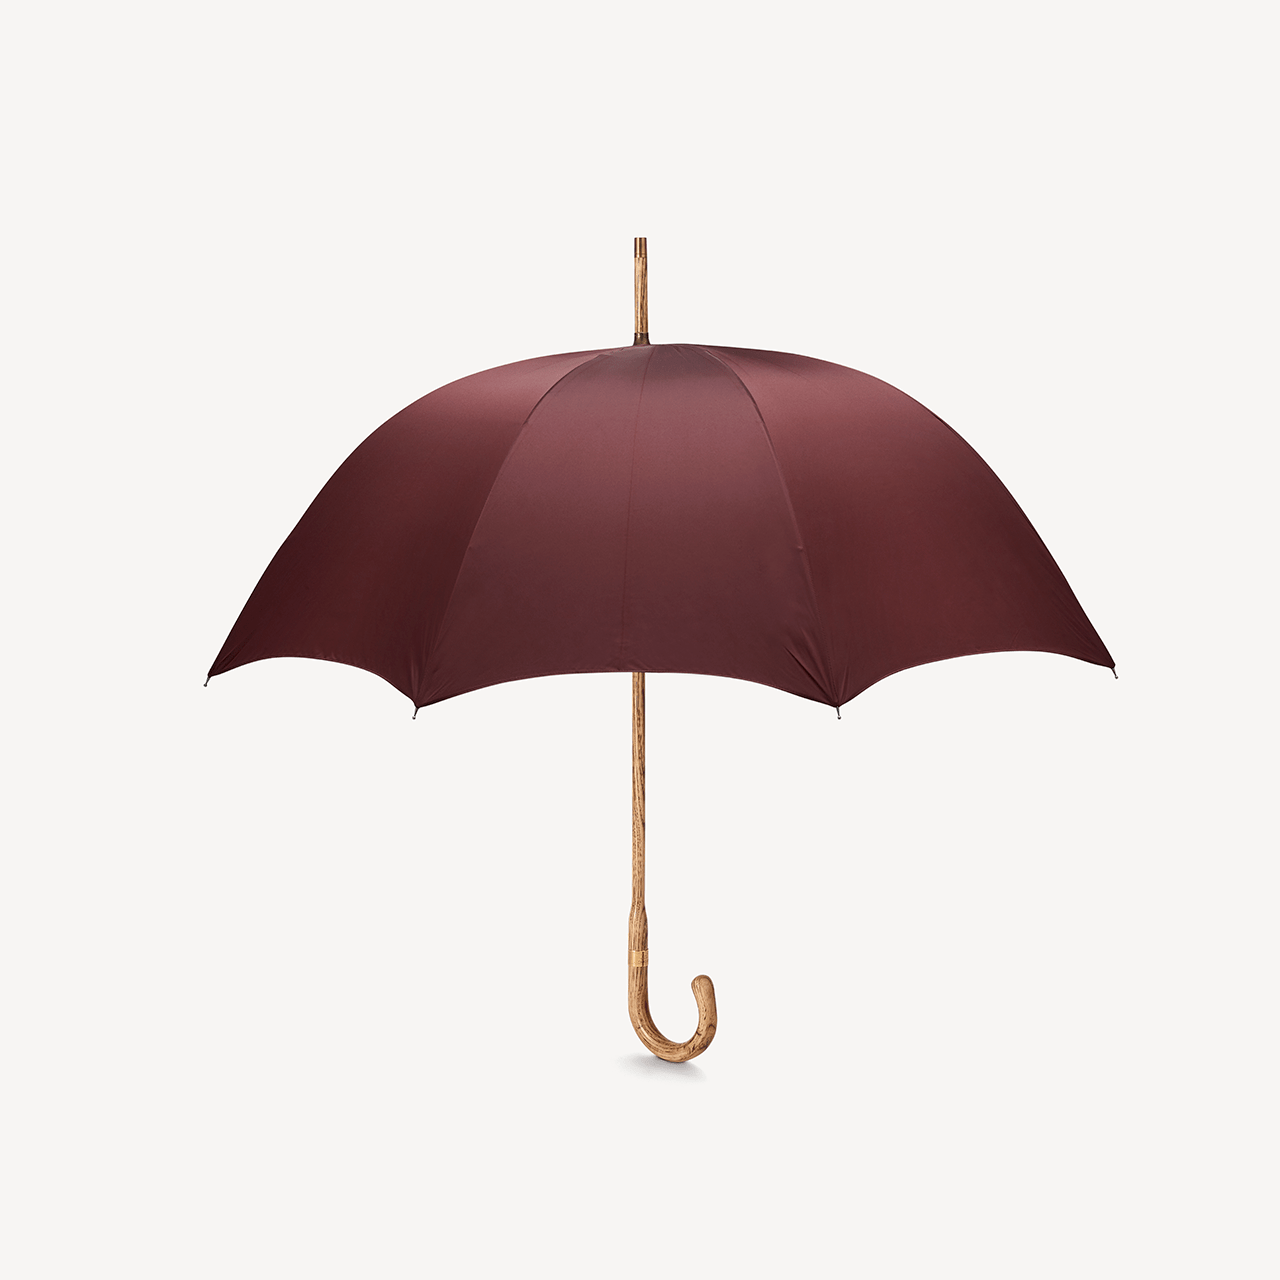 Hickory Umbrella for Men - Burgundy - Swaine